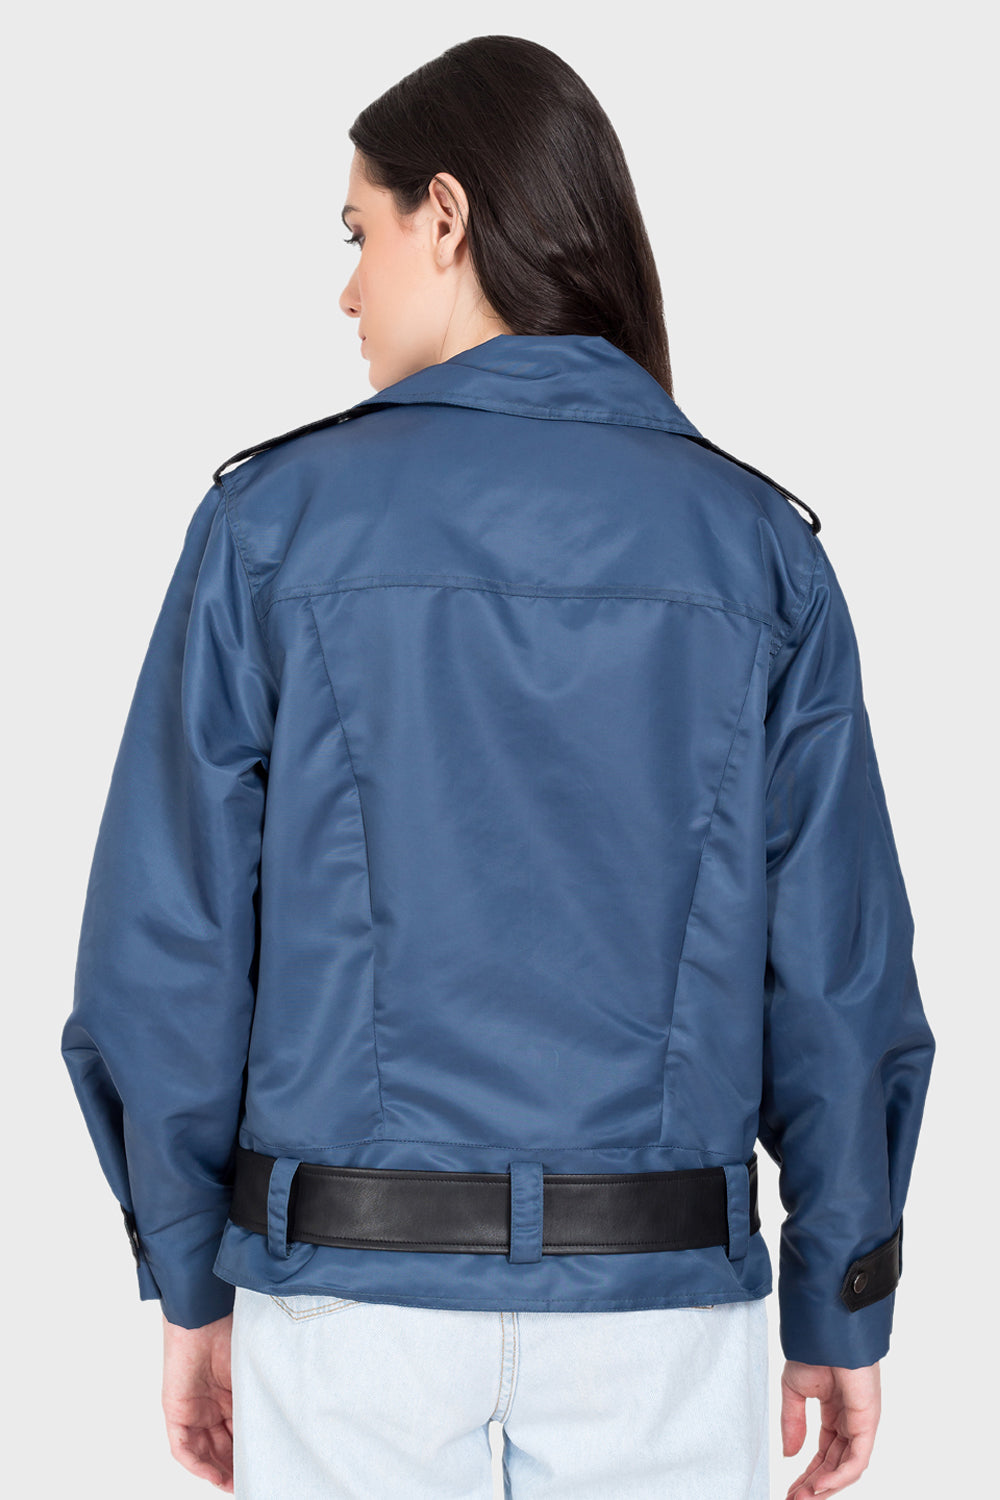 Justanned Oversized Cobalt Jacket